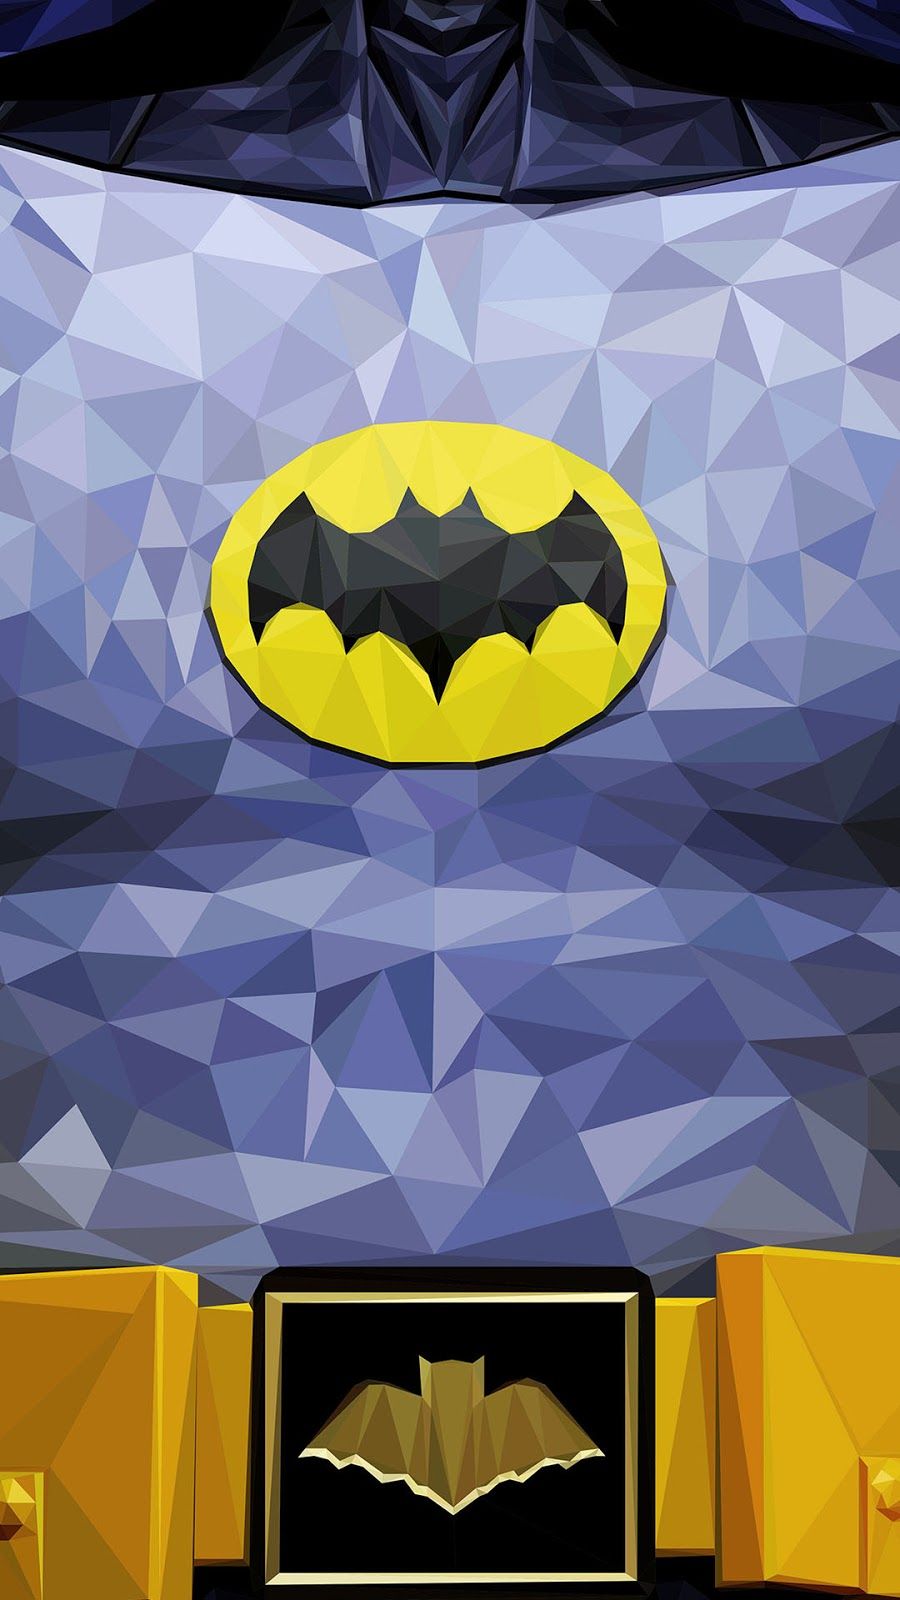 Batman phone wallpaper. Cool Wallpaper.cc. Batman comic wallpaper, Batman wallpaper, Superman wallpaper logo